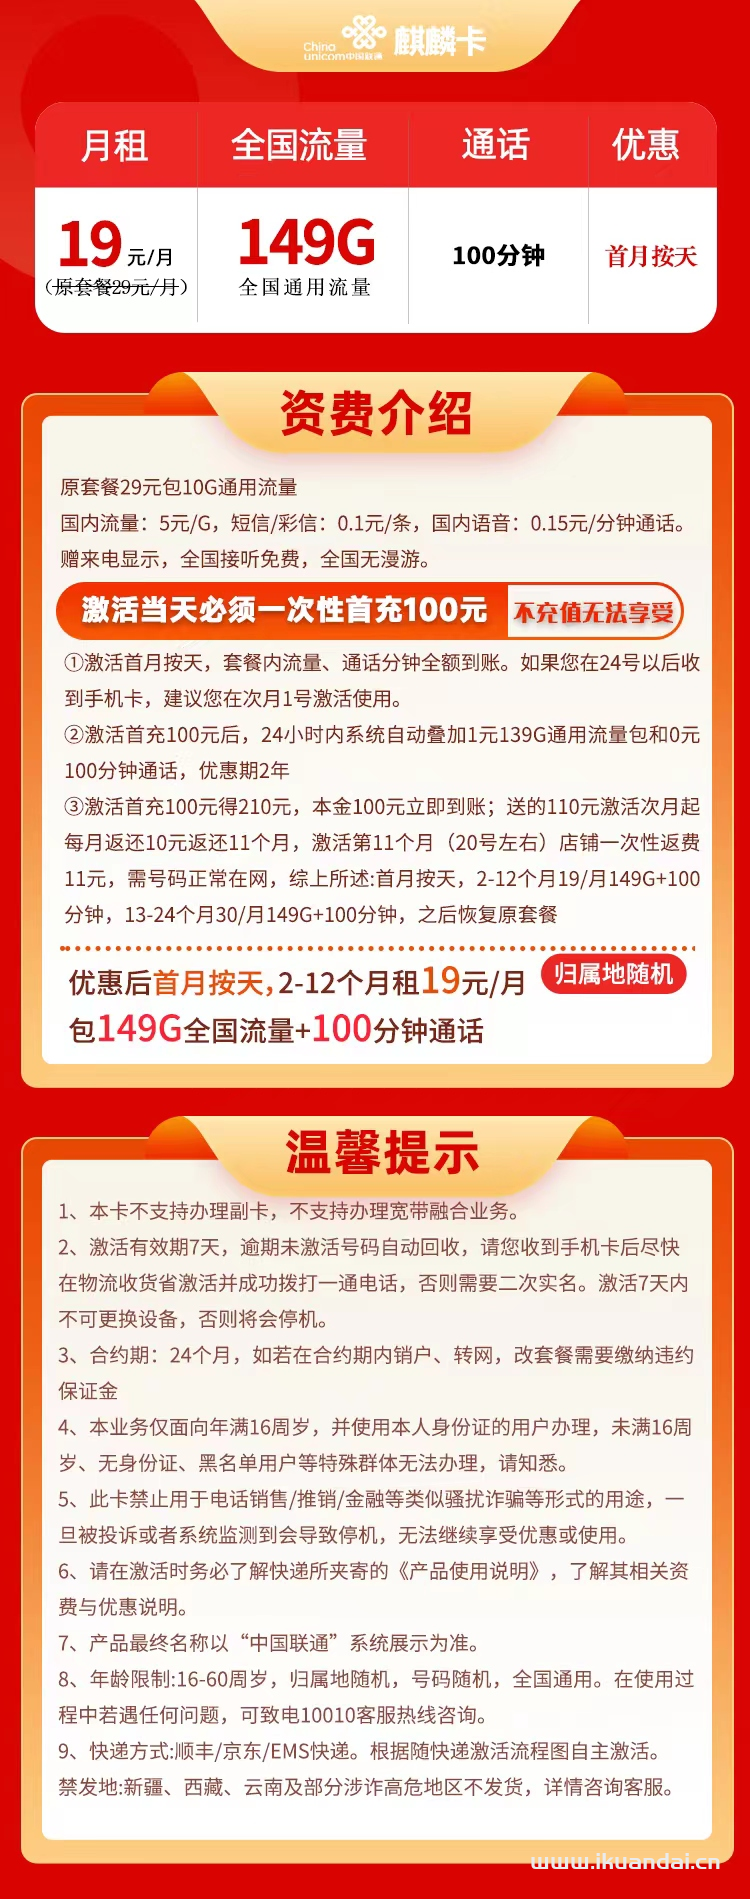 湖北联通-麒麟卡19元149G通用+100分钟通话 流量套餐介绍插图2